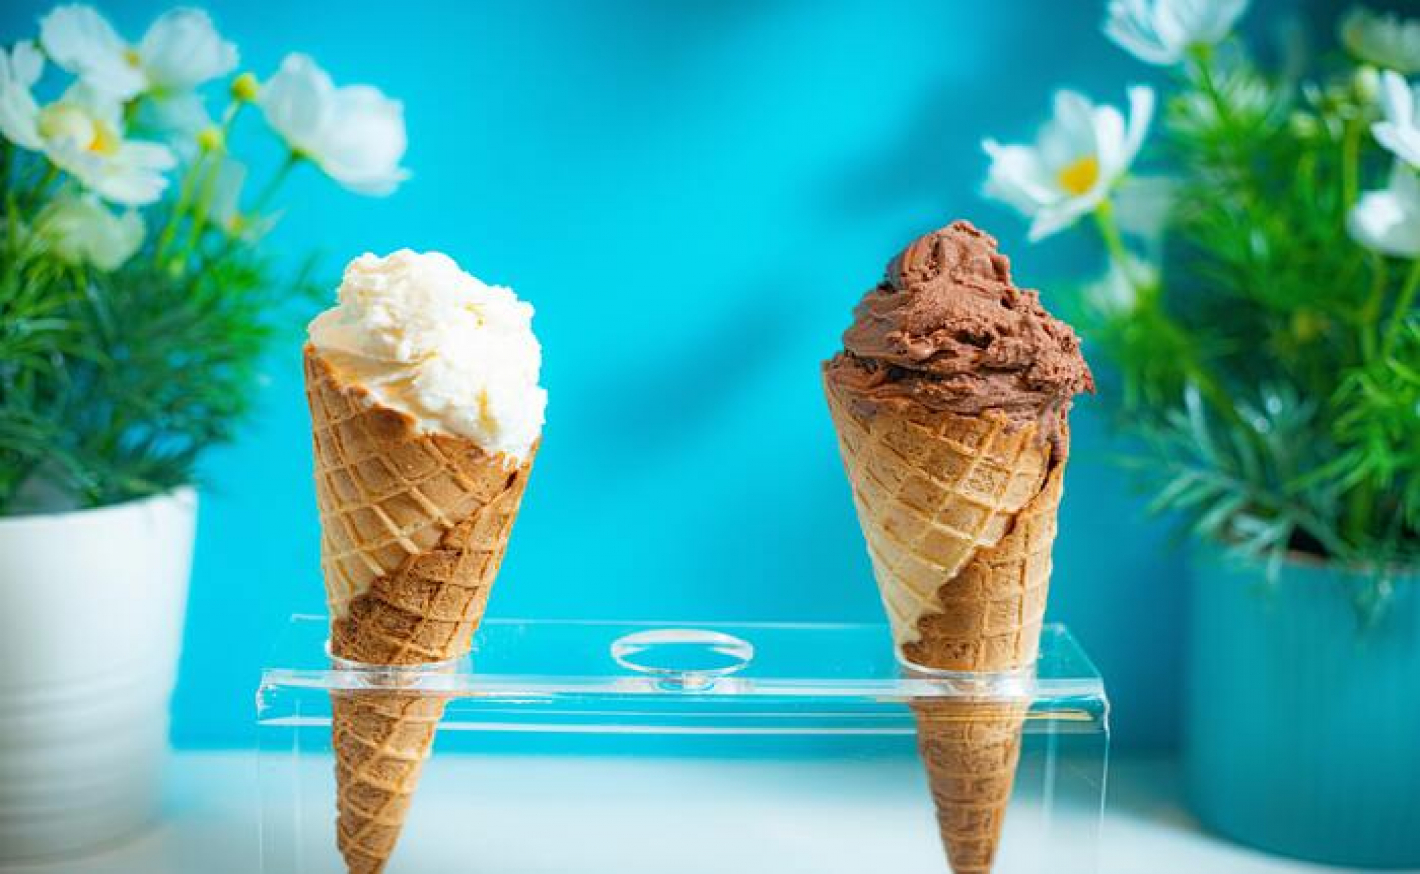 Franquias de sorvetes: 9 opções famosas para abrir seu negócio